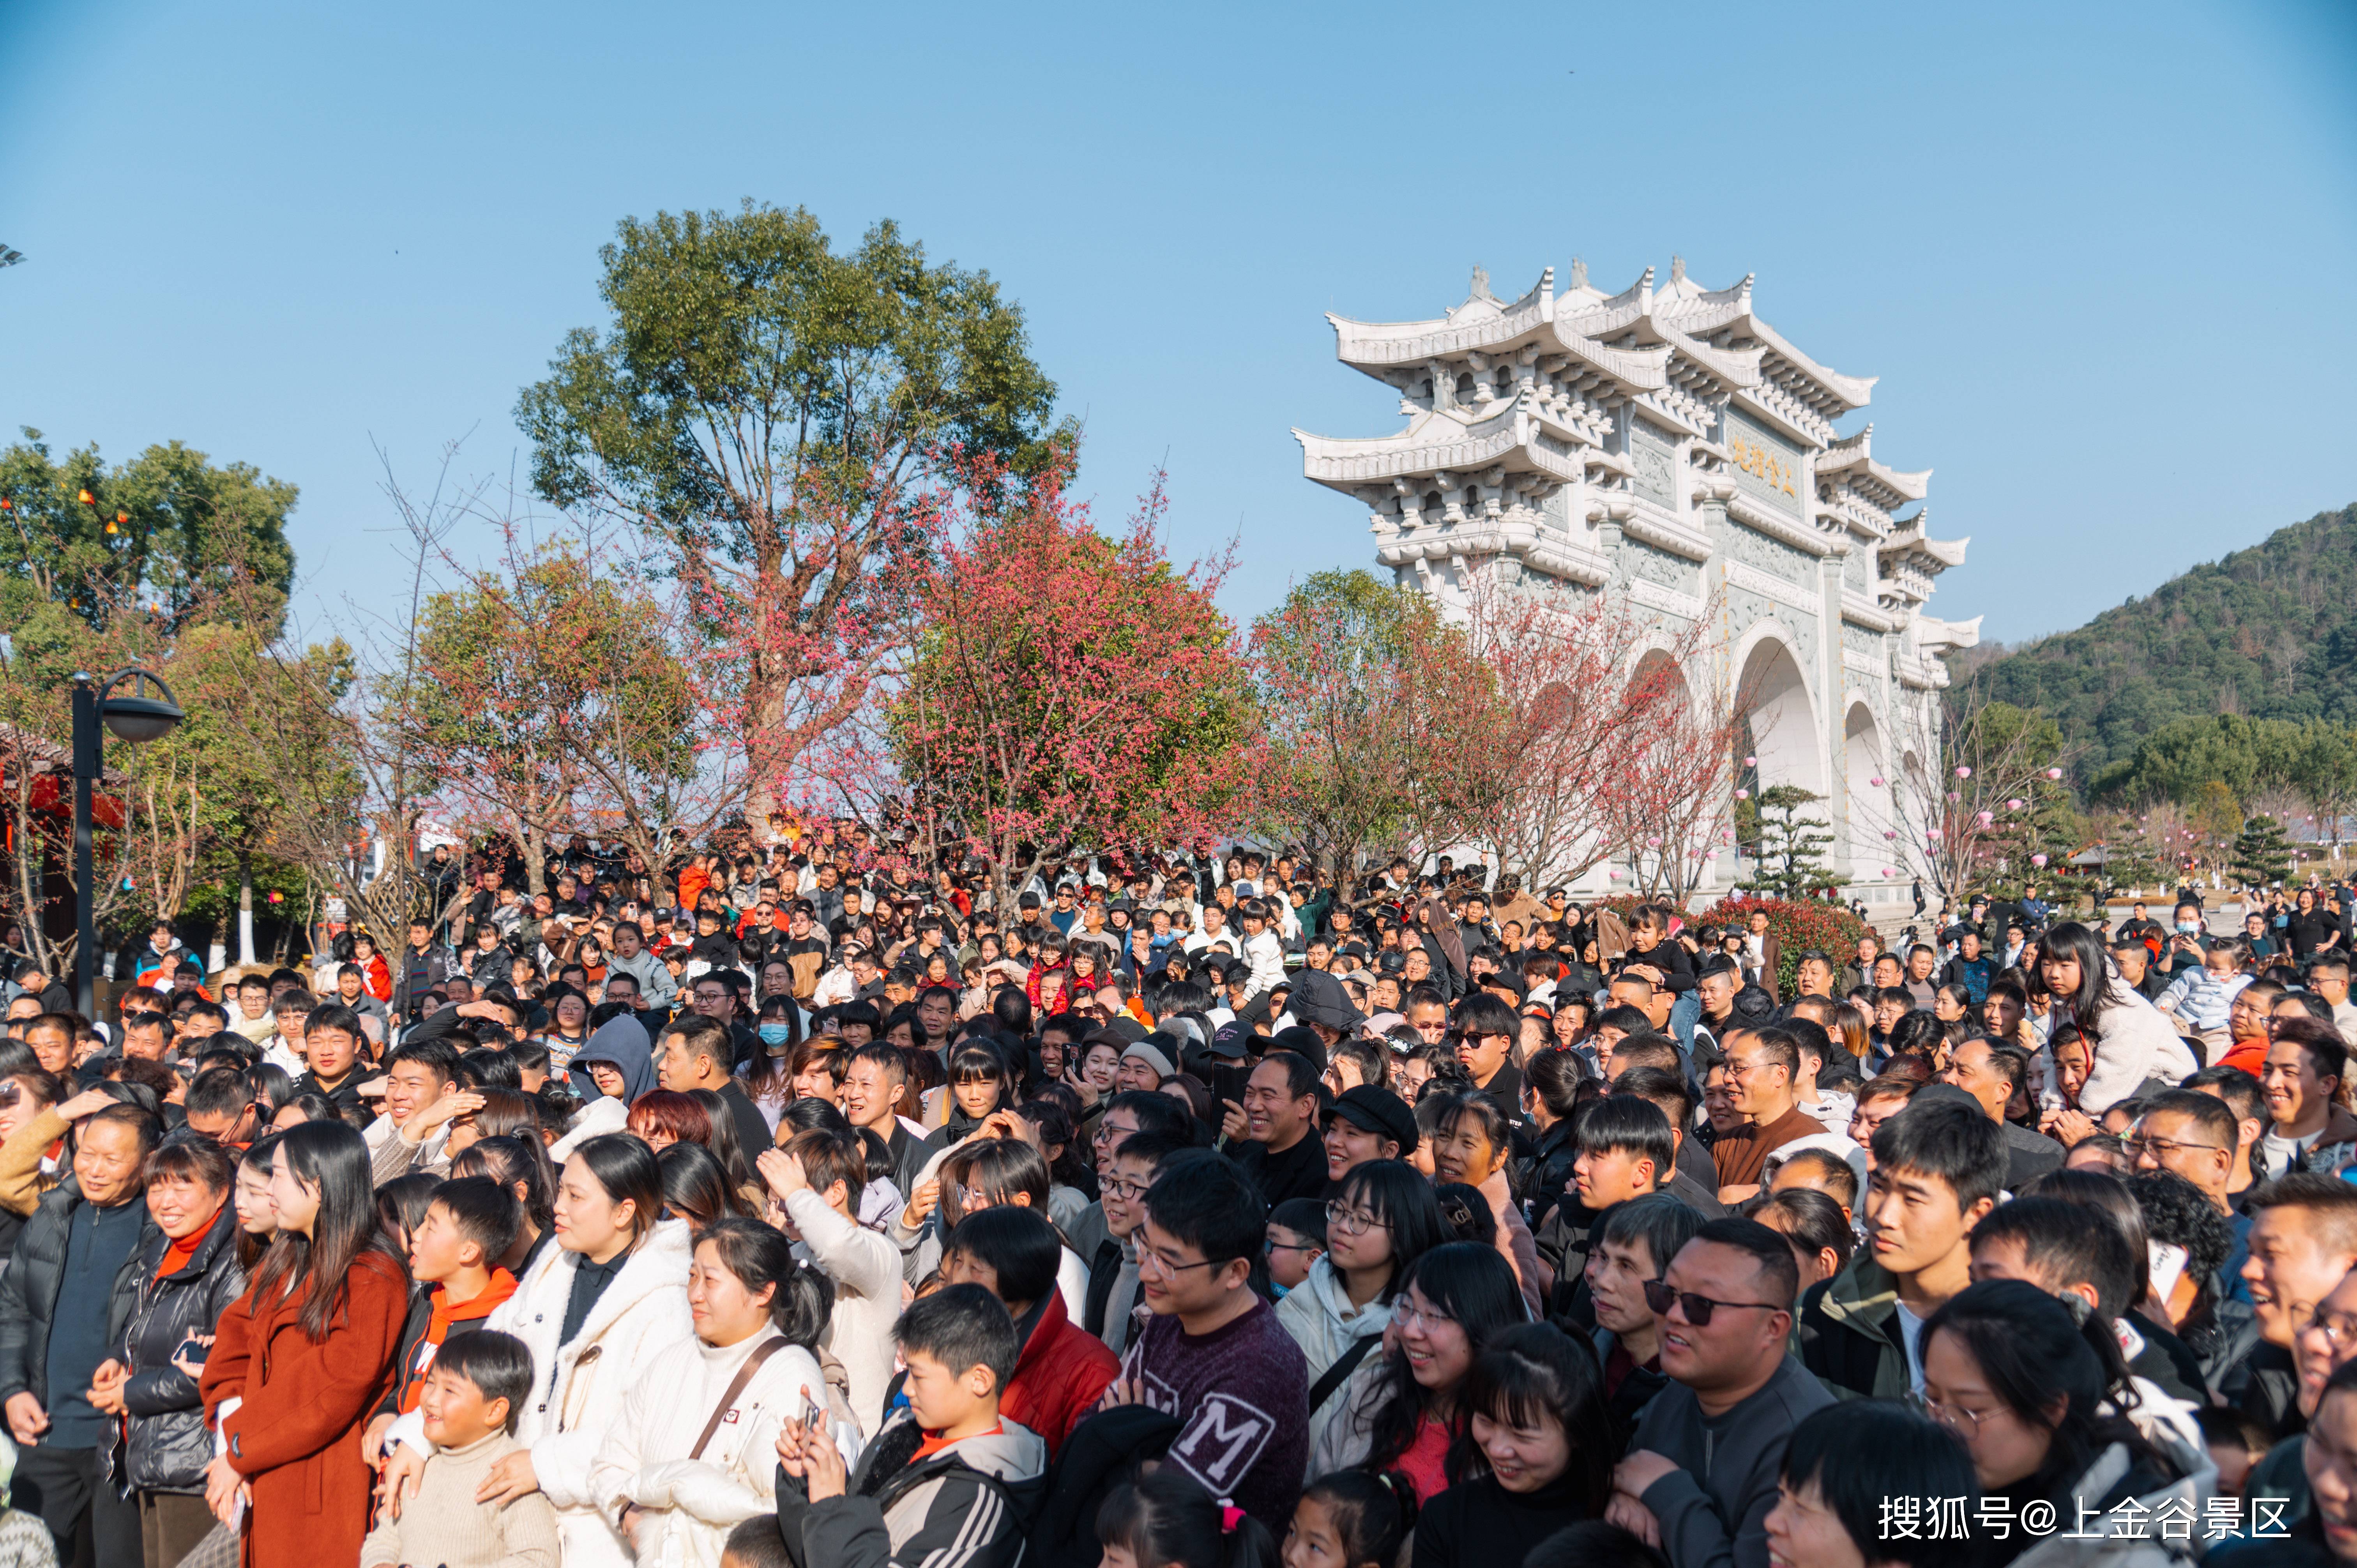 上金谷景区正月初五人气爆满 迎来春节客流高峰